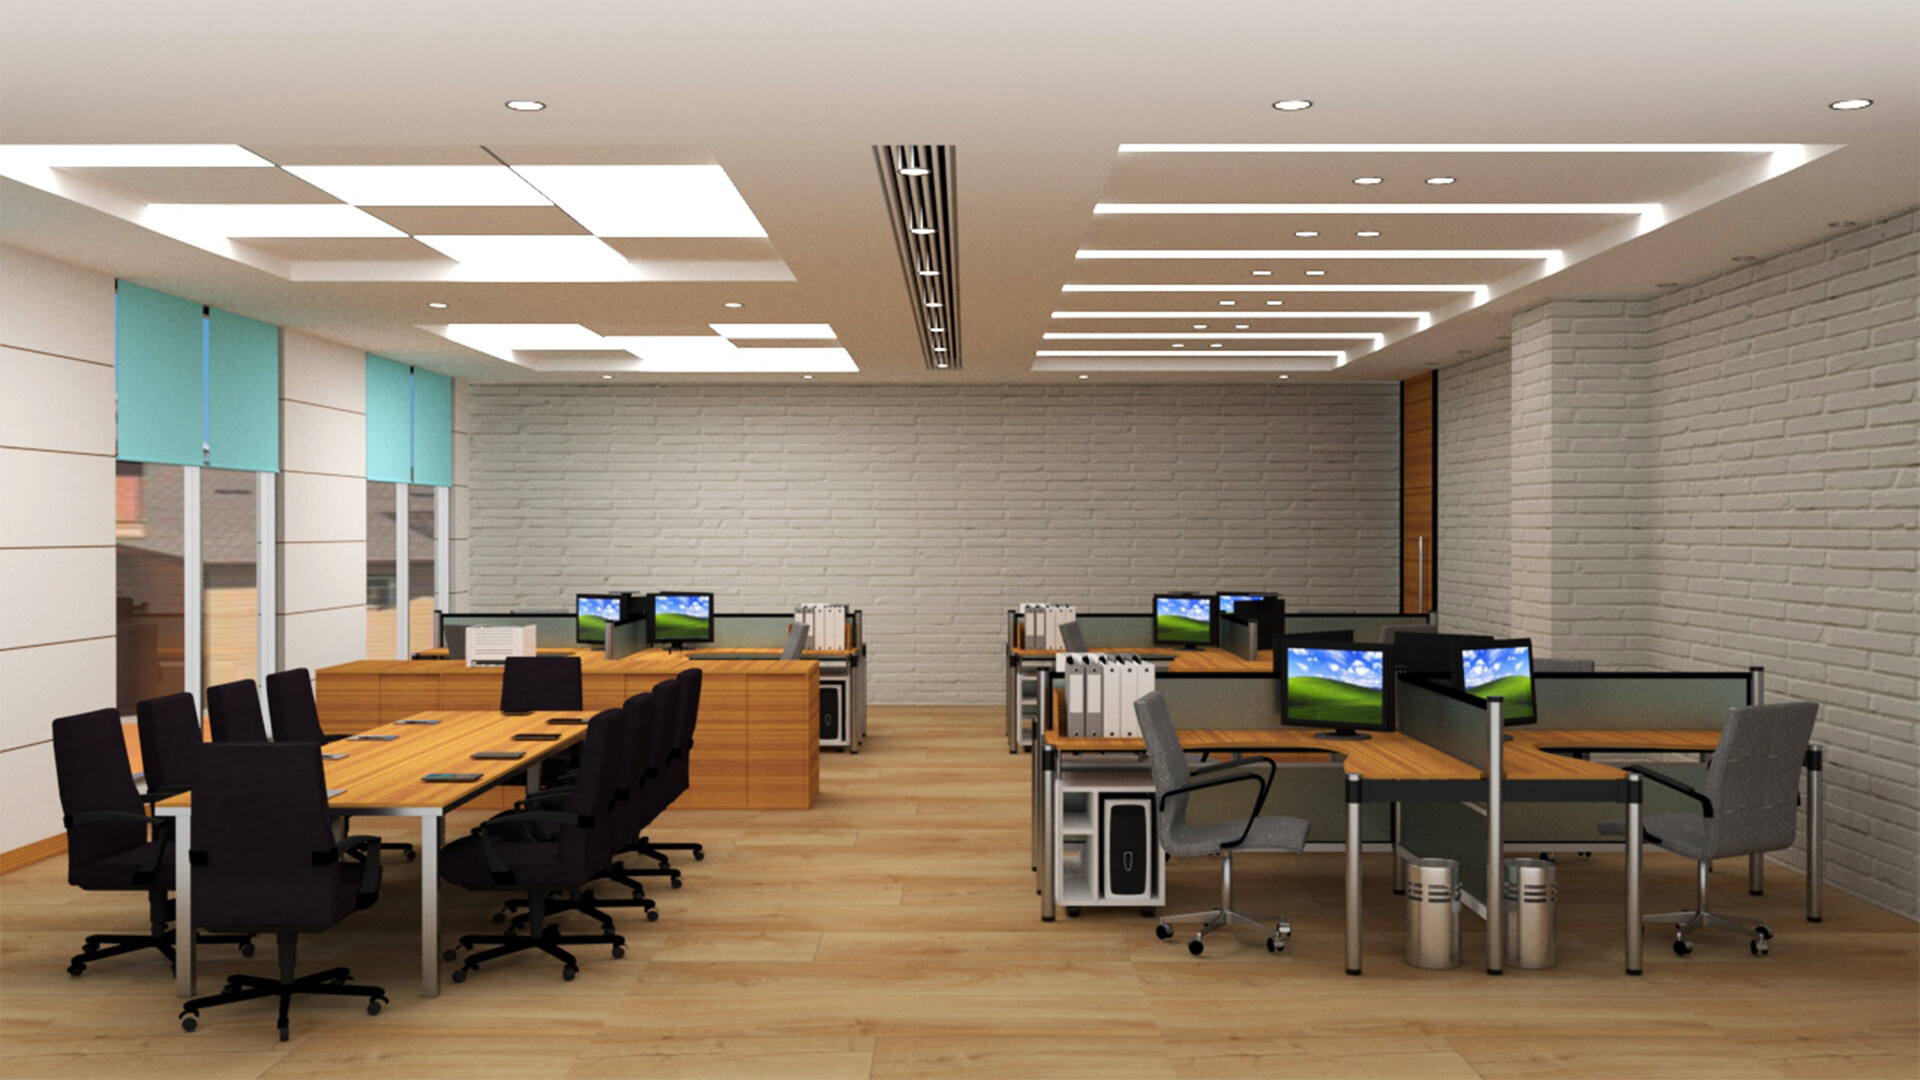 ArtStation - Office Interior Design